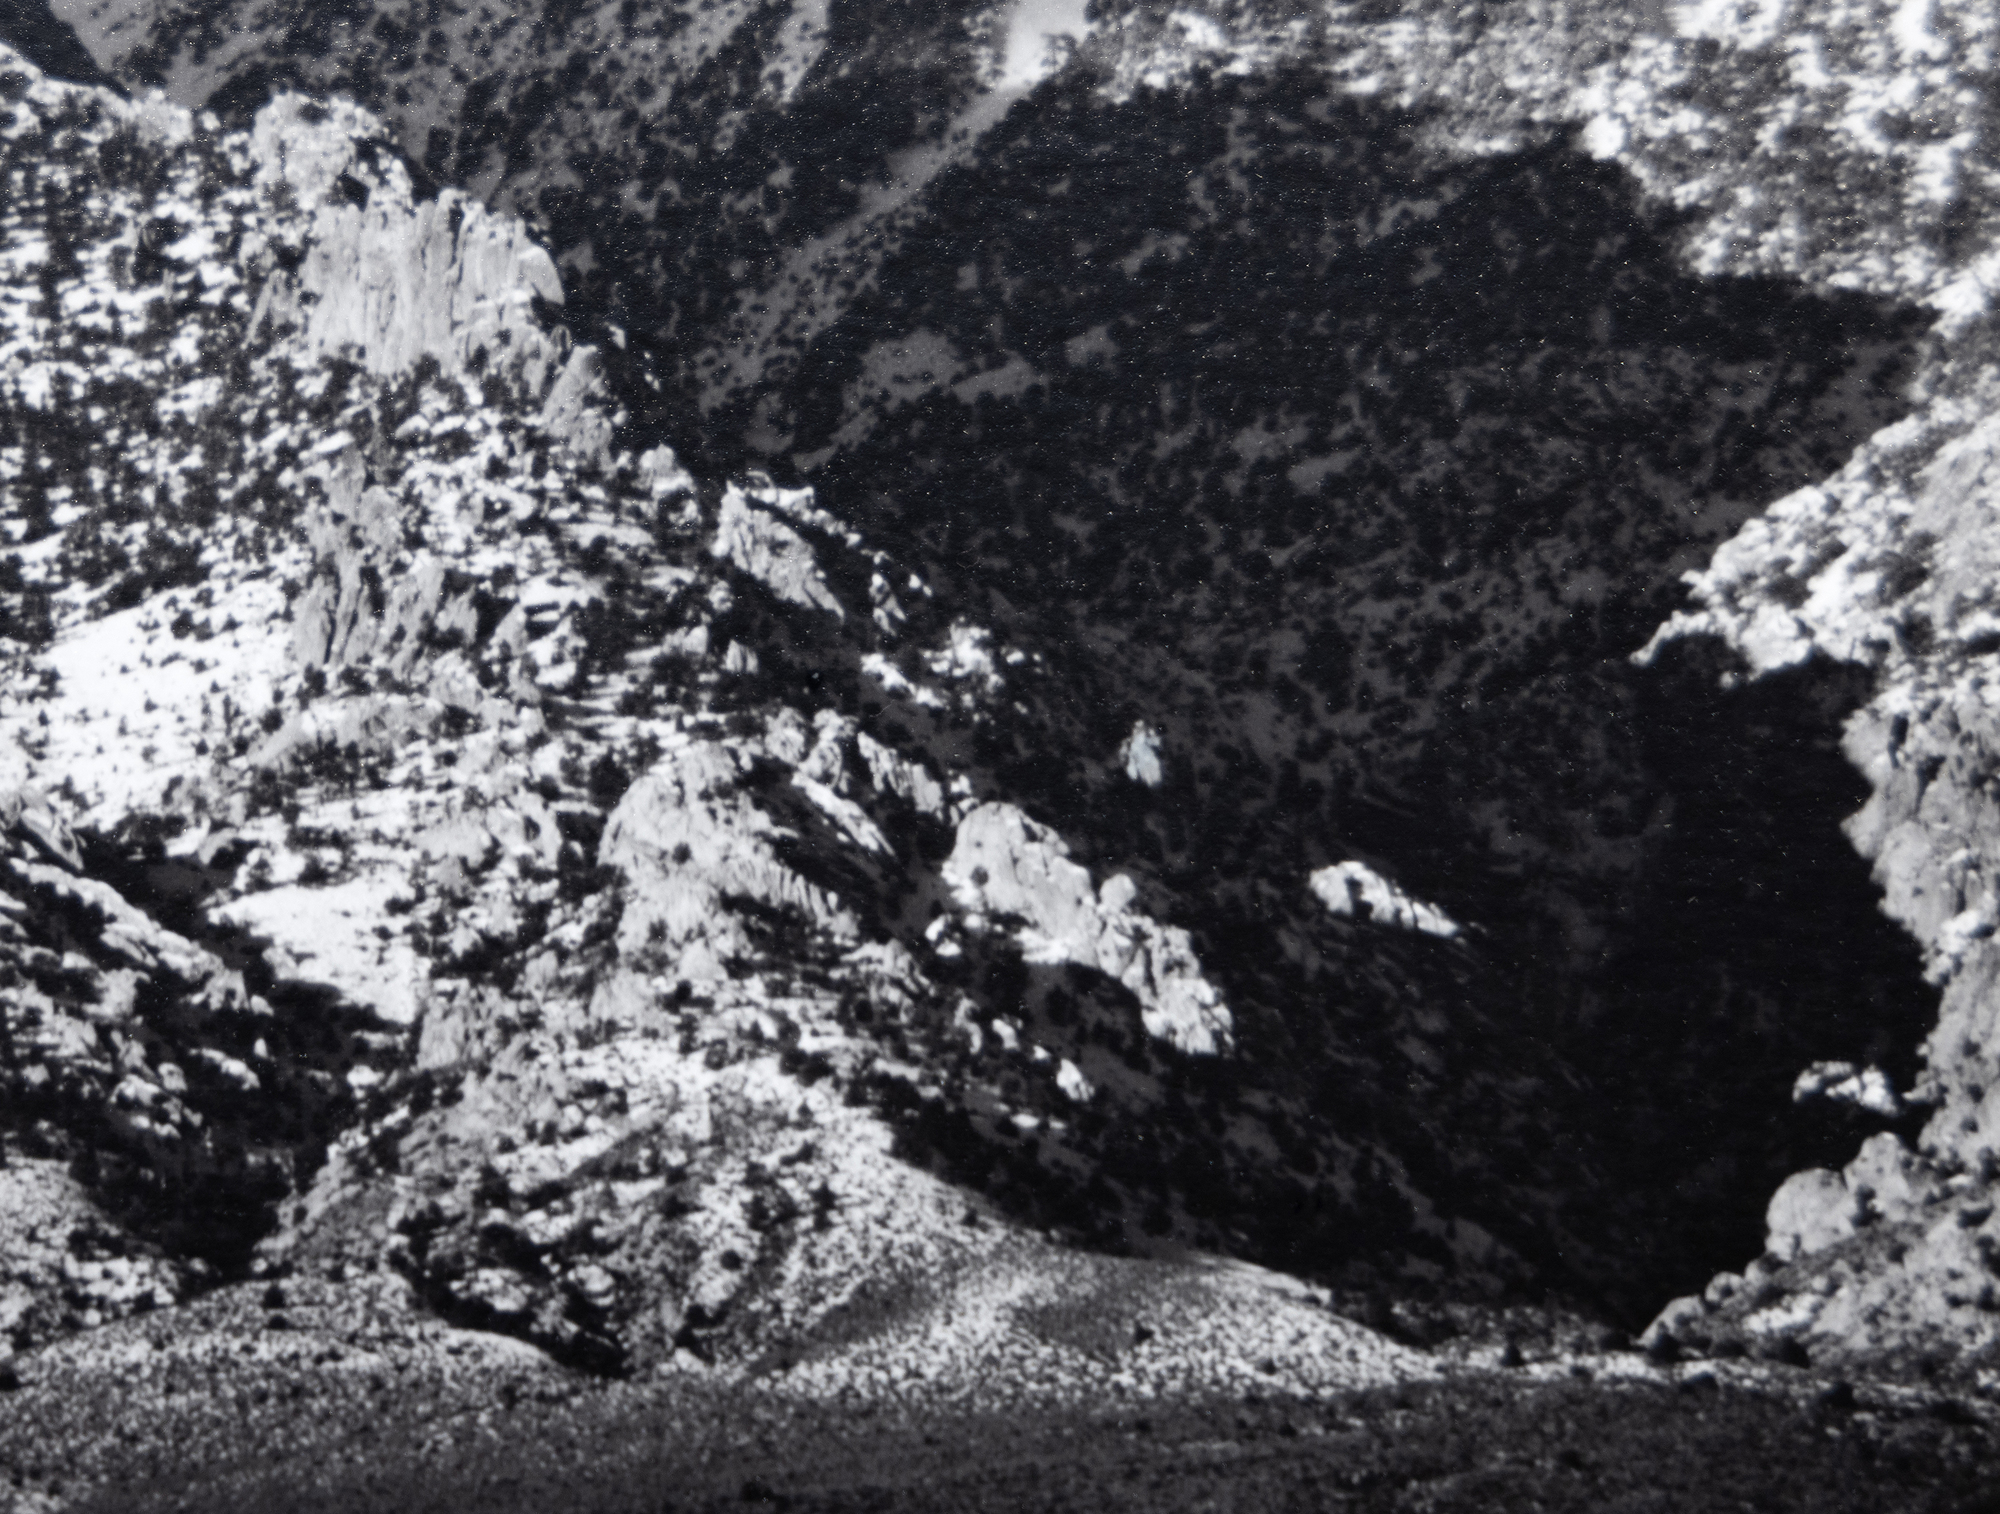 La exploración de Ansel Adams del valle de Owens y las vistas de la imponente ladera oriental de Sierra Nevada tienen un significado inmenso. Se encuentran entre las fotografías más emblemáticas que permitieron a Adams captar la majestuosidad de Sierra Nevada y, al mismo tiempo, dar una vívida impresión de la profundidad y extensión del árido fondo del valle. El monte Williamson, Sierra Nevada, desde el valle de Owens, fue fotografiado probablemente en 1944, poco después de incorporar el sistema de zonas que permitía una amplia gama tonal y una exposición equilibrada con claridad tanto en las altas luces como en las sombras. El presente ejemplar, impreso en agosto de 1978, forma parte de la colección de muchos museos, pero entre los coleccionistas se encuentra entre las impresiones más raras de Ansel Adams.